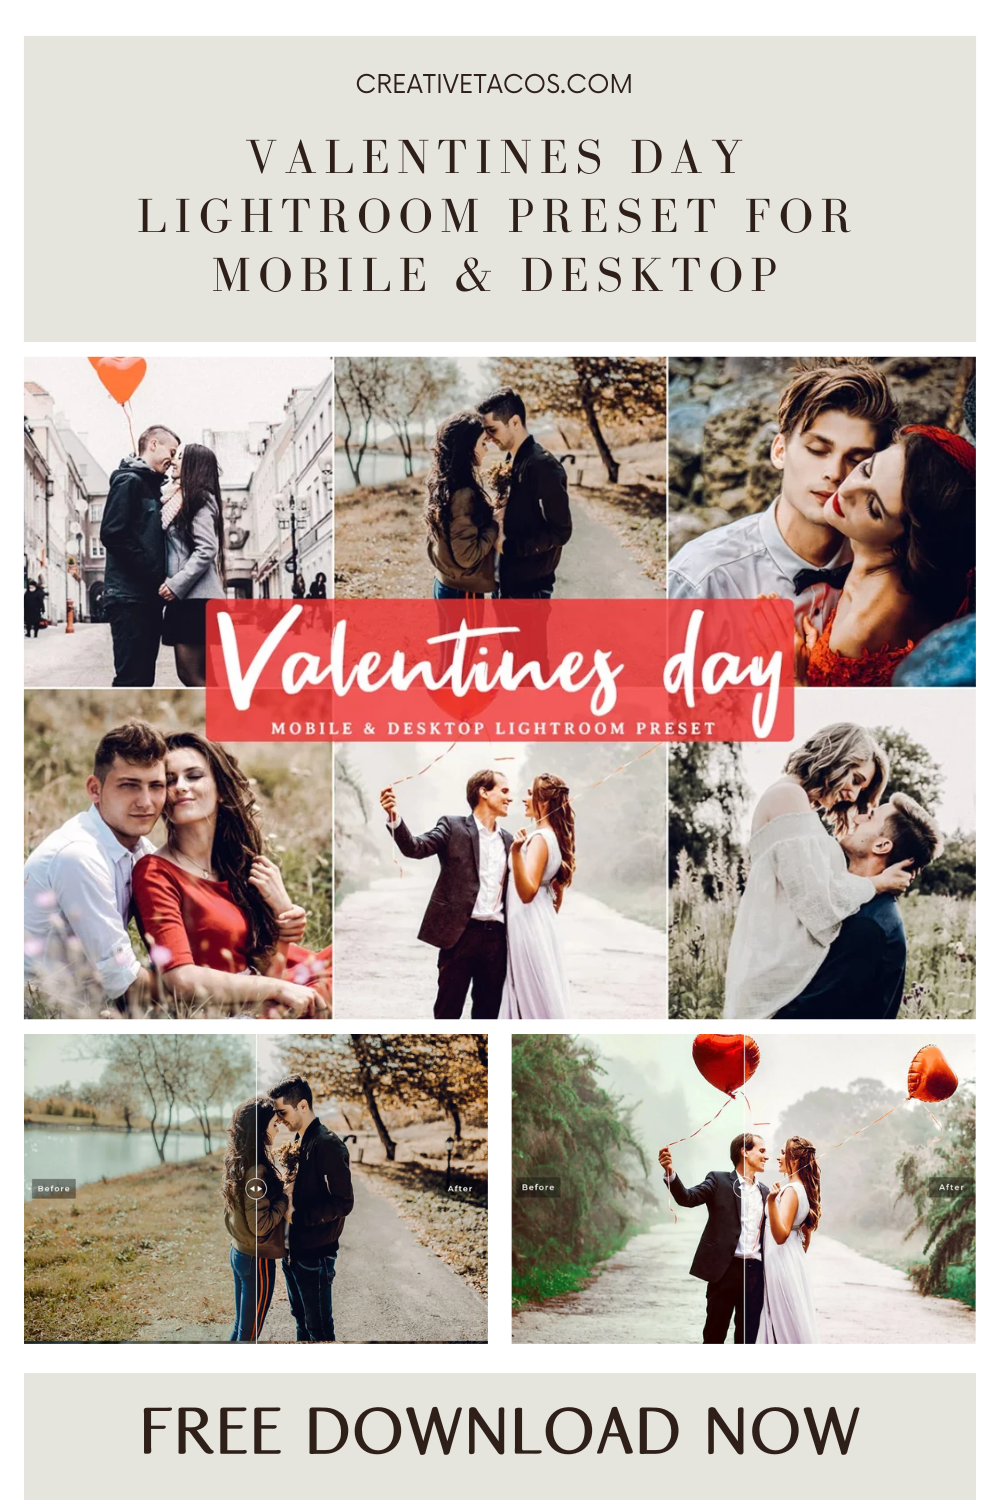 Valentines Day Lightroom Preset For Mobile & Desktop